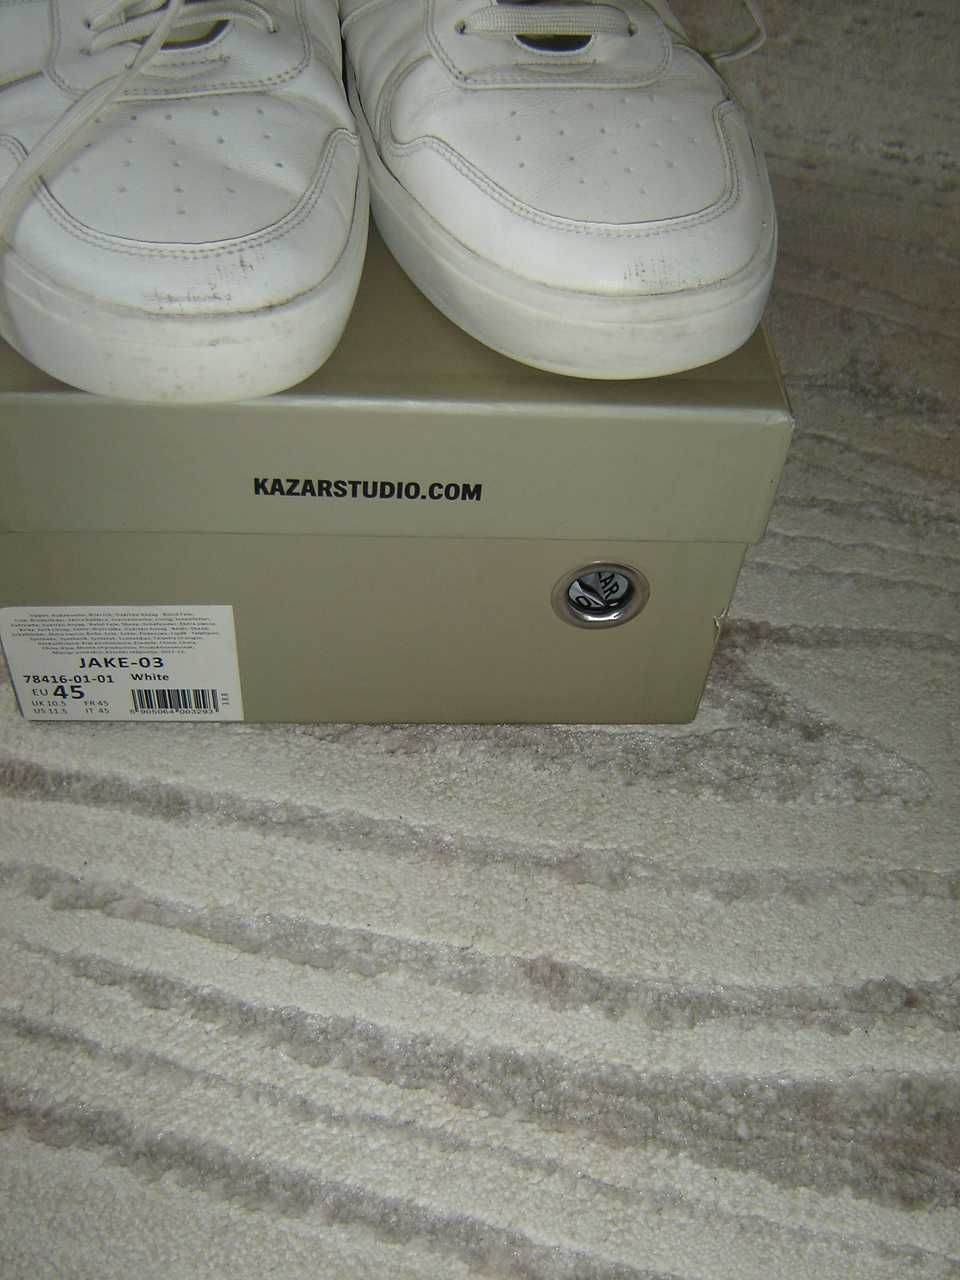 Sneakersy białe KAZAR rozmiar 45-tanio zobacz!